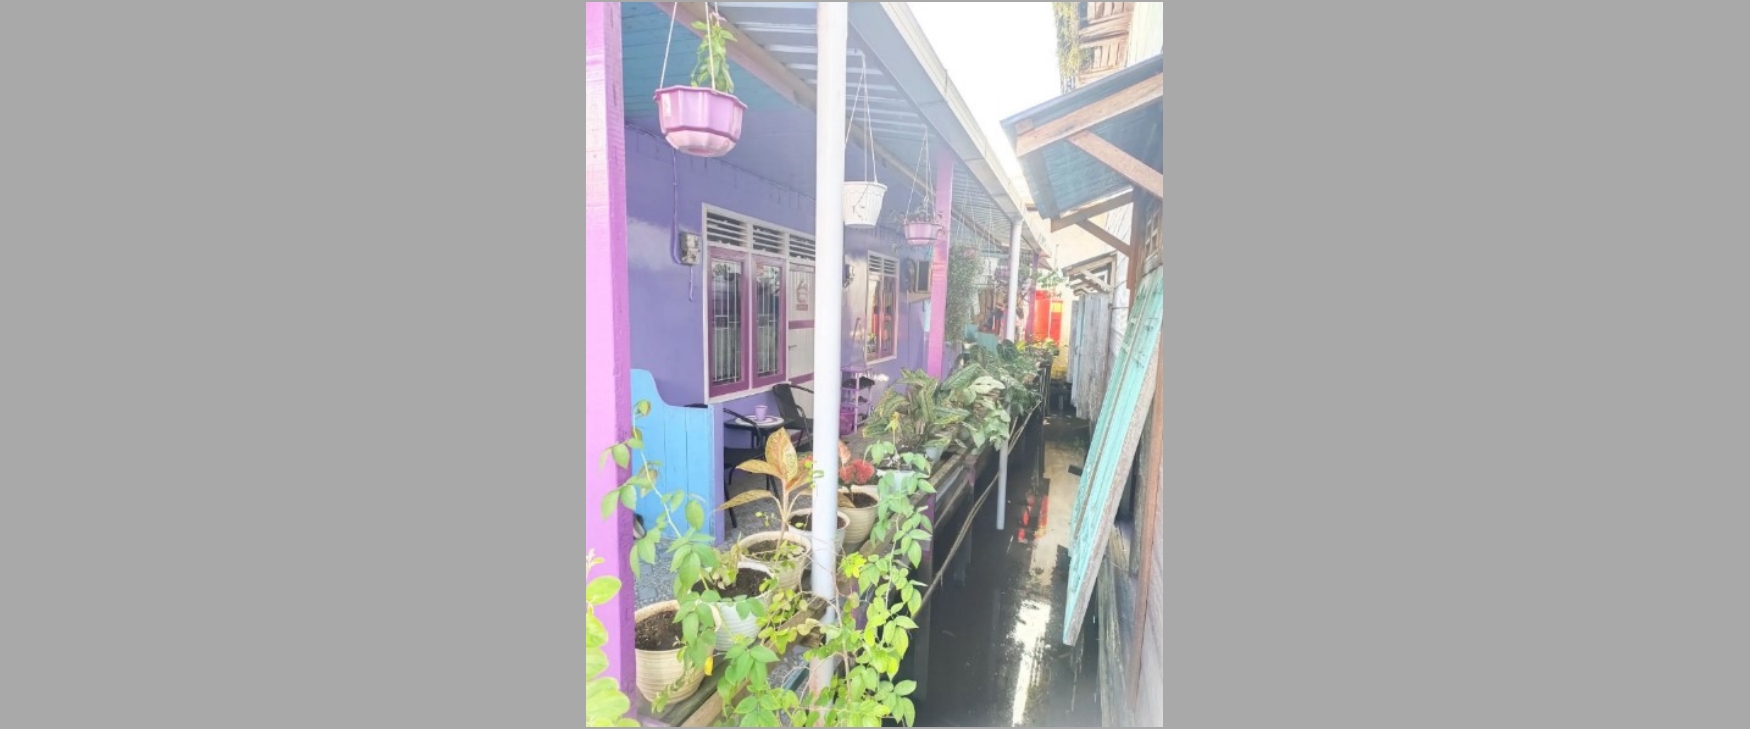 Rumah panggung ungu ini dari luar tampak sederhana dalamnya Instagramable banget, intip 9 potretnya